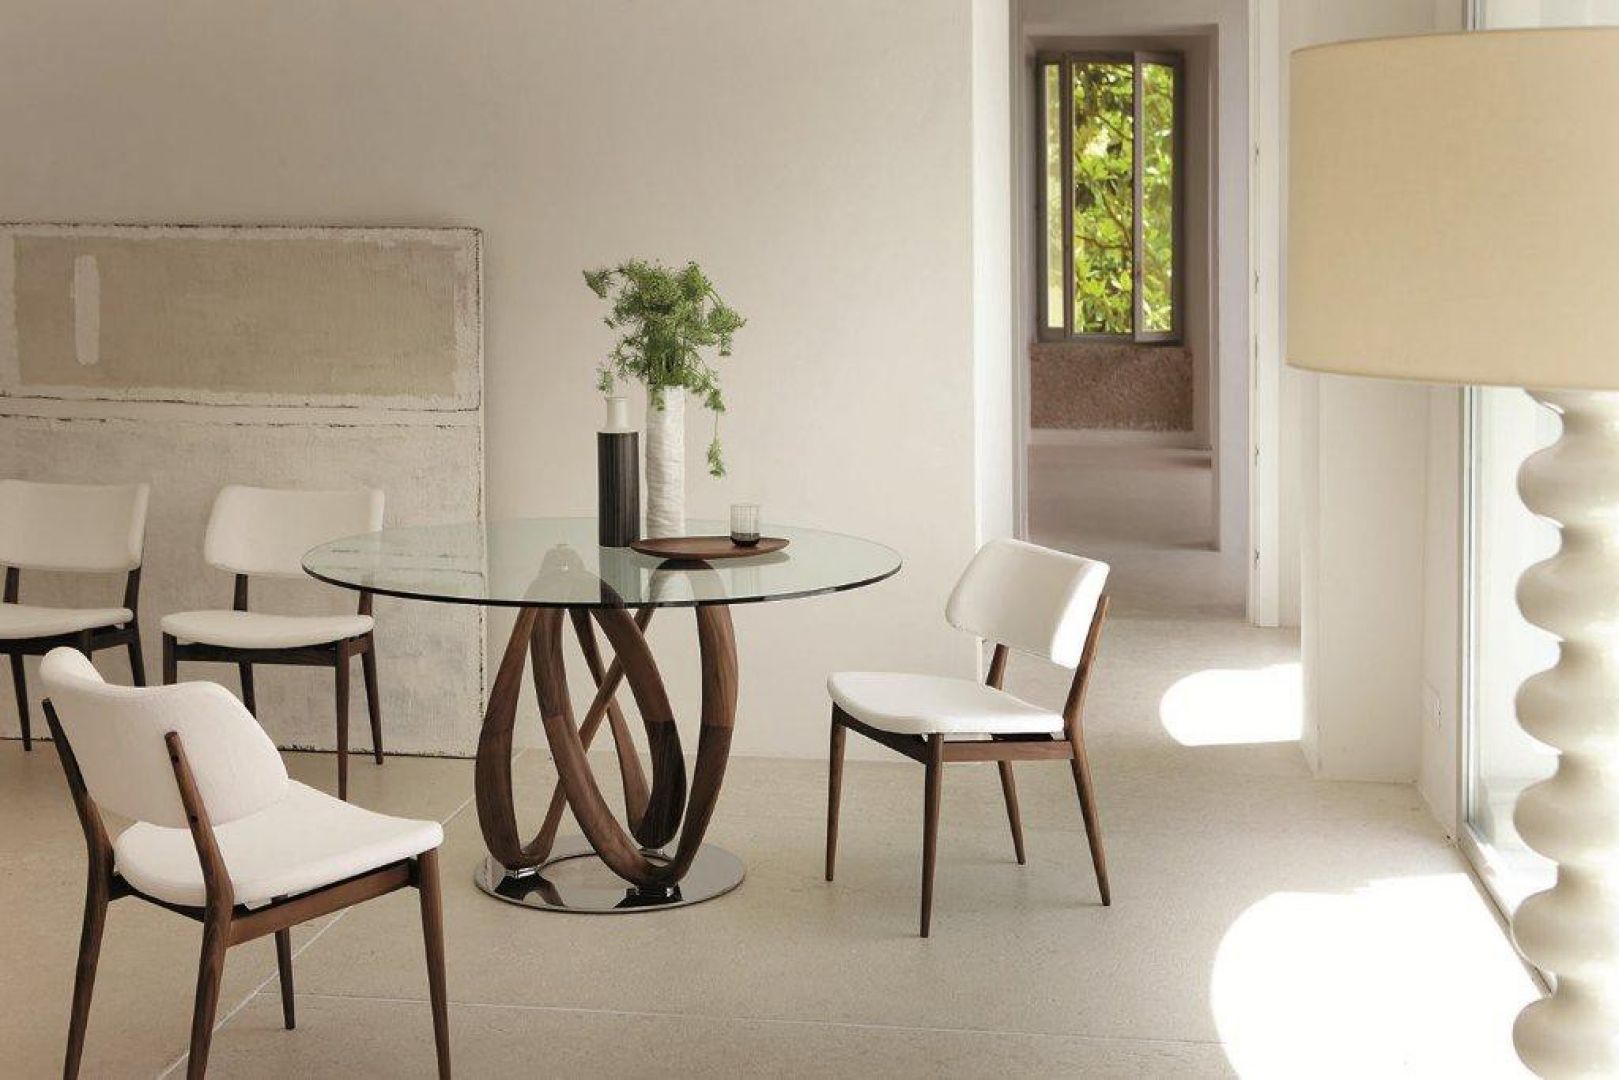 „Infinity” - stół i stolik okolicznościowy zaprojektowany dla firmy Porada. Fot. Porada.